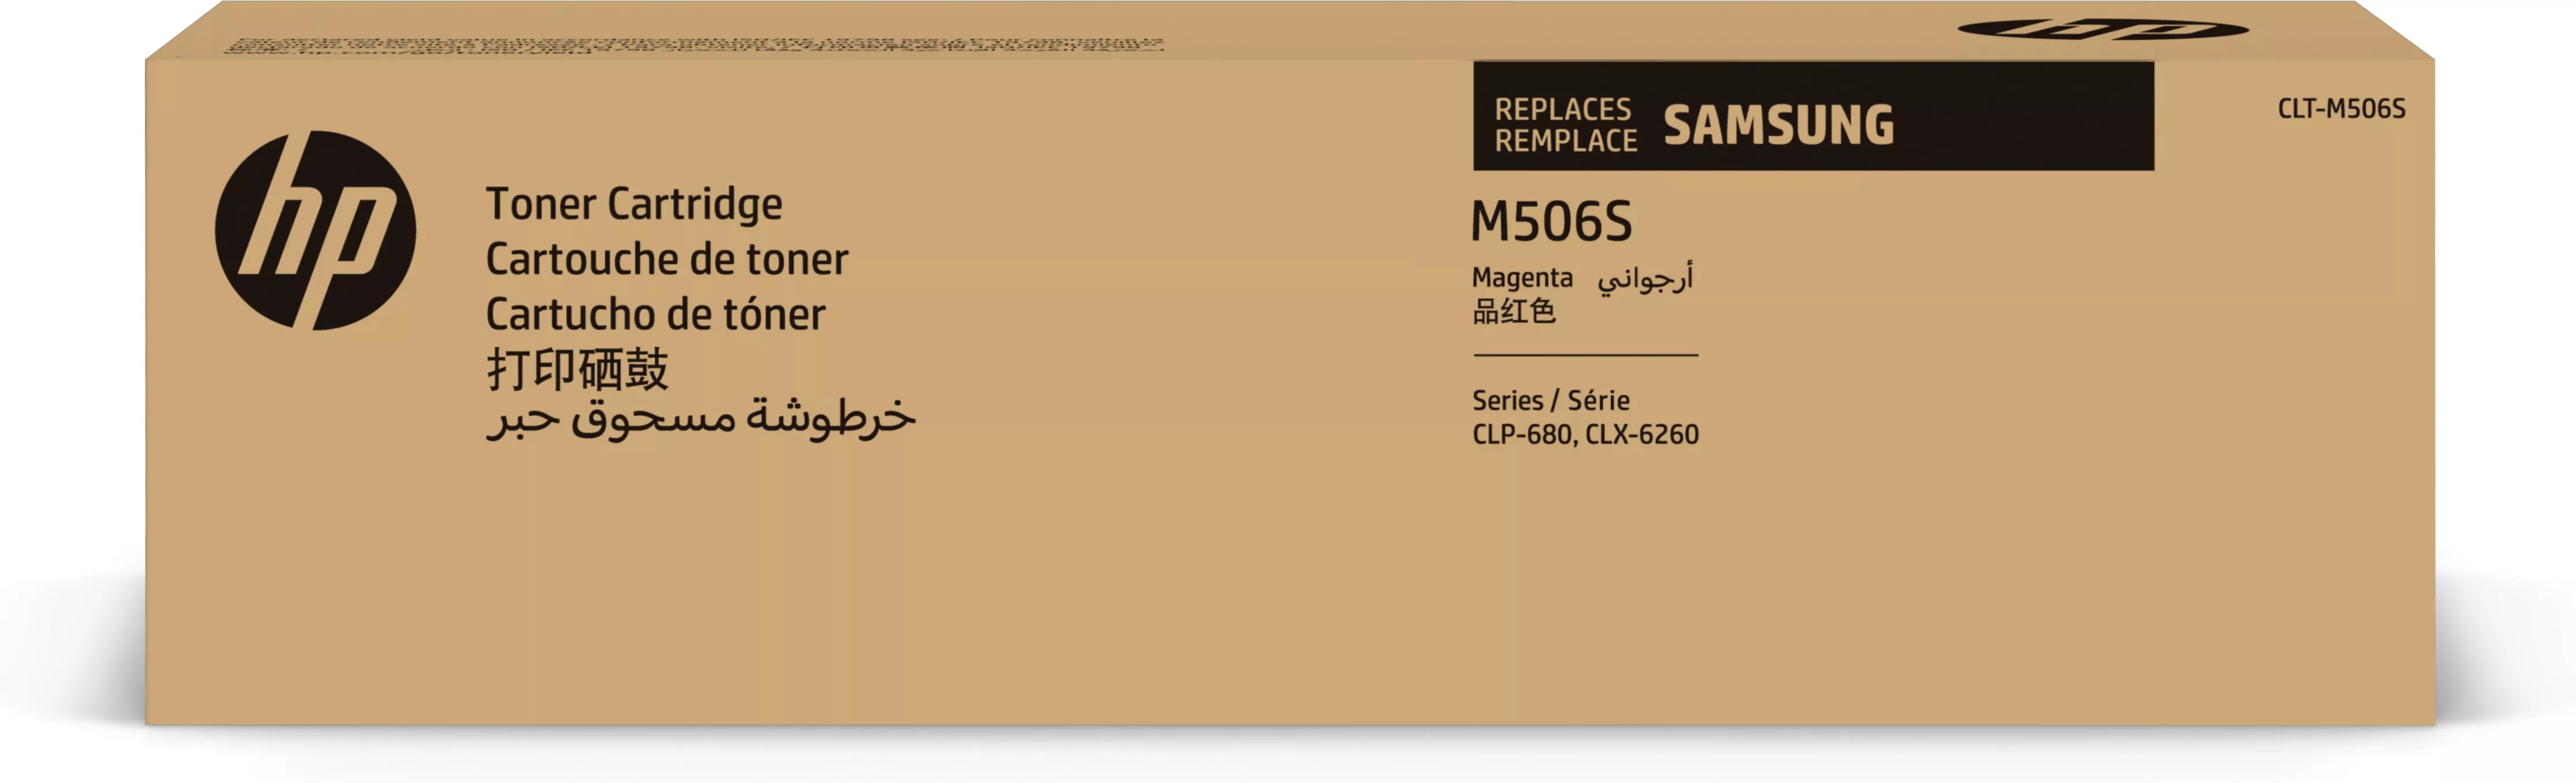 Vente HP Samsung CLT-M506S Toner magenta authentique HP au meilleur prix - visuel 8